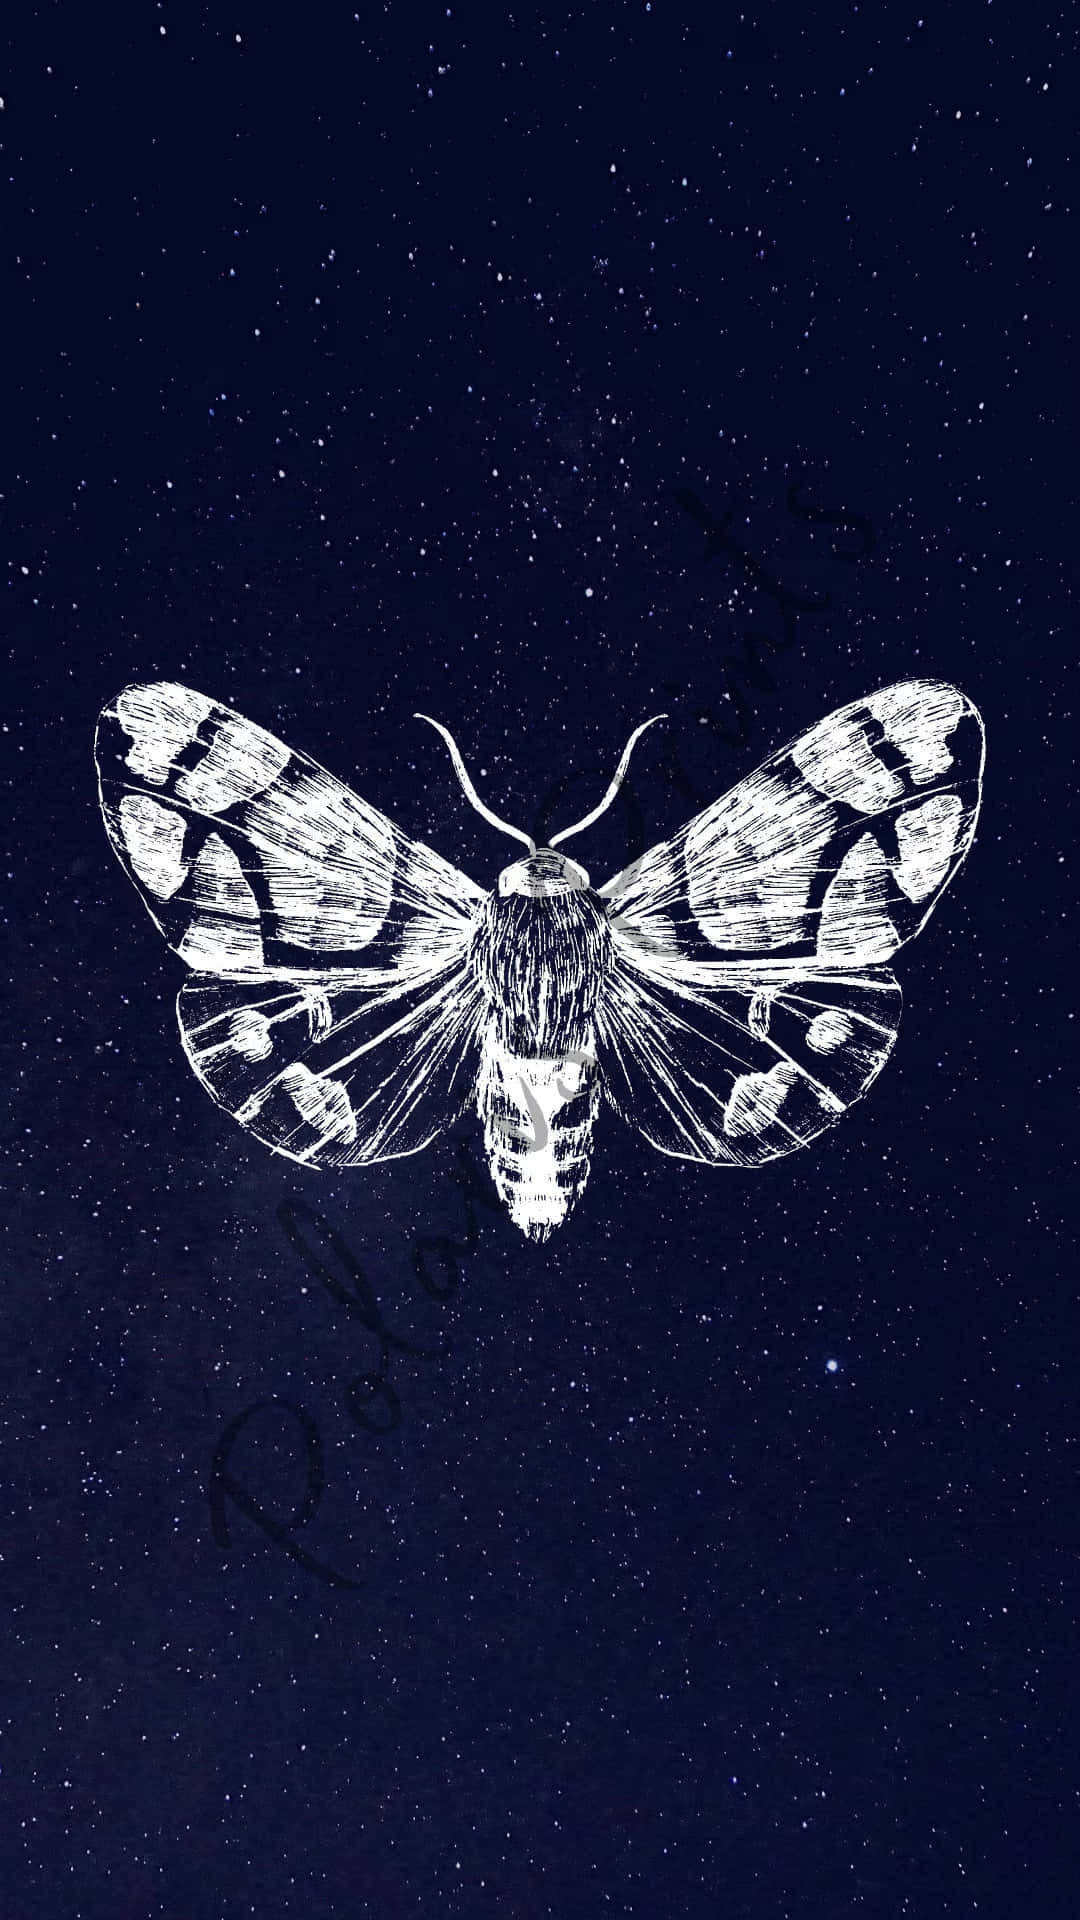 Moth Starry Night Aesthetic.jpg Wallpaper